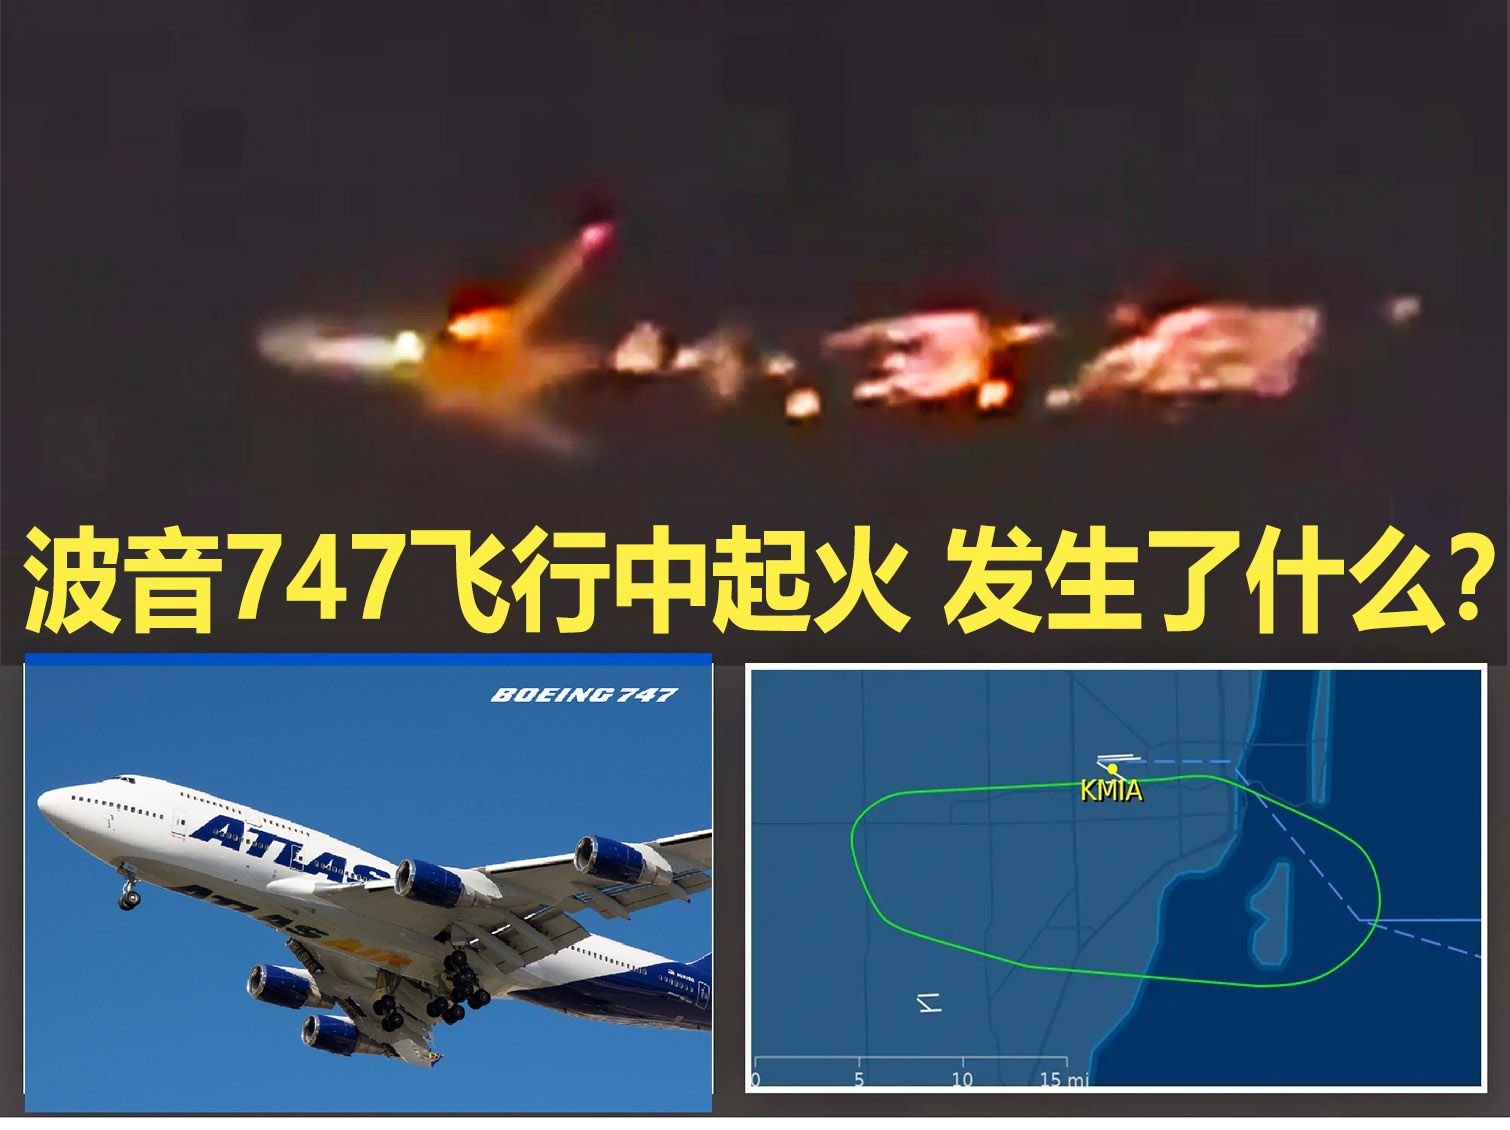 突发: 波音747飞行中引擎爆炸起火 大量燃烧碎片脱落 美国迈阿密机场